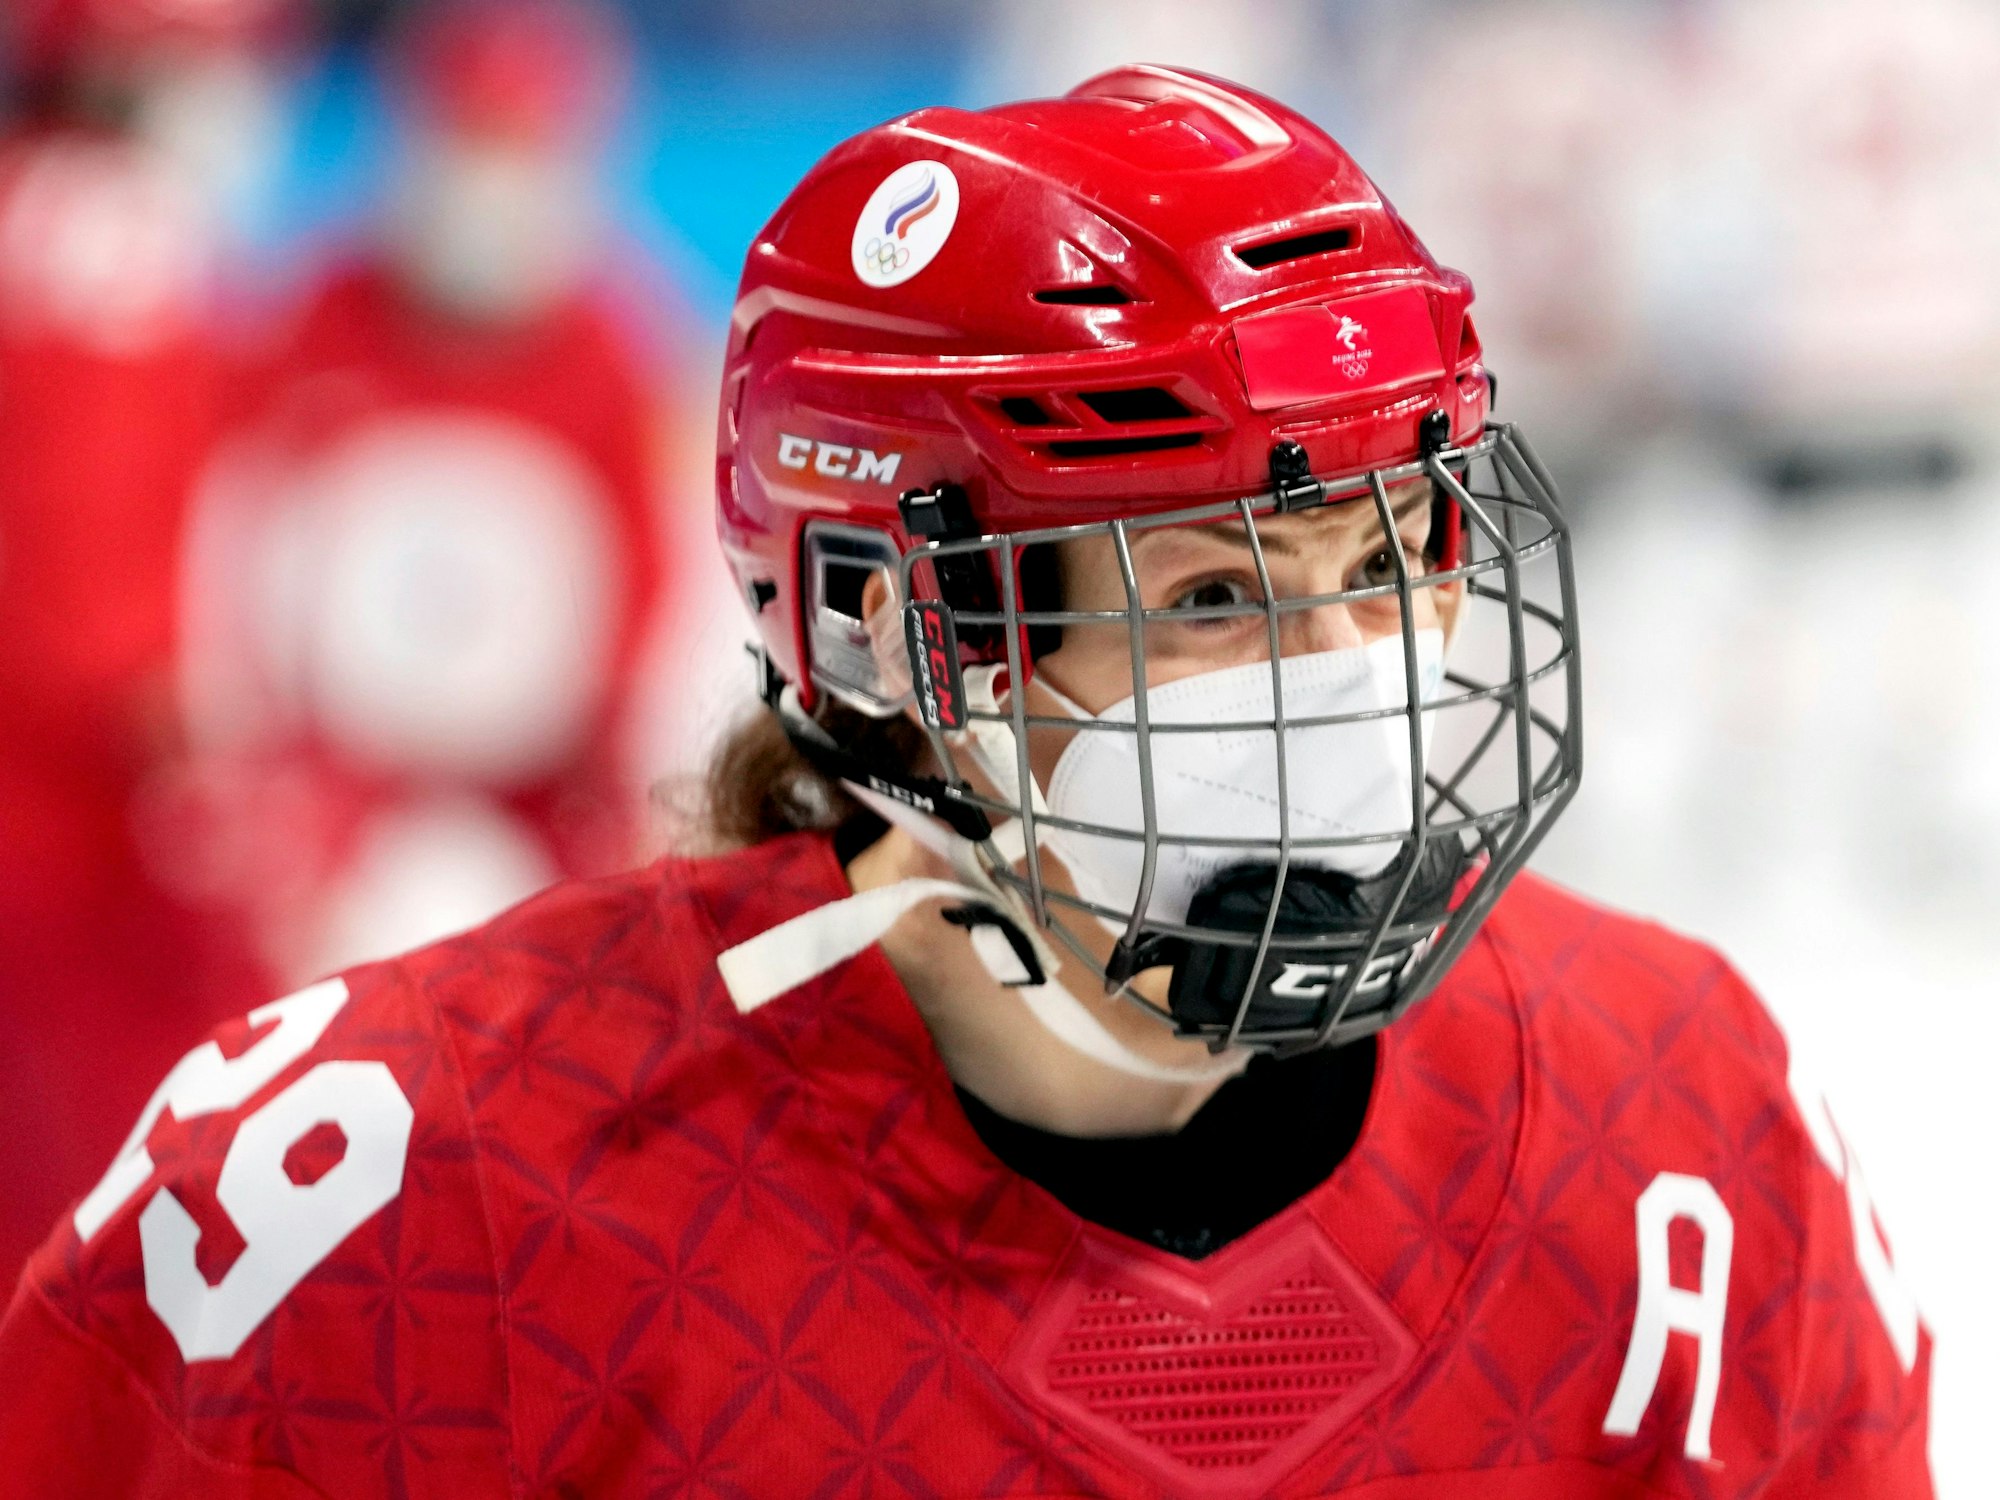 Beim Eishockey-Vorrundenspiel der Frauen am 7. Februar 2022 trugen die Spielerinnen Corona-Schutzmasken unter ihren Visieren.